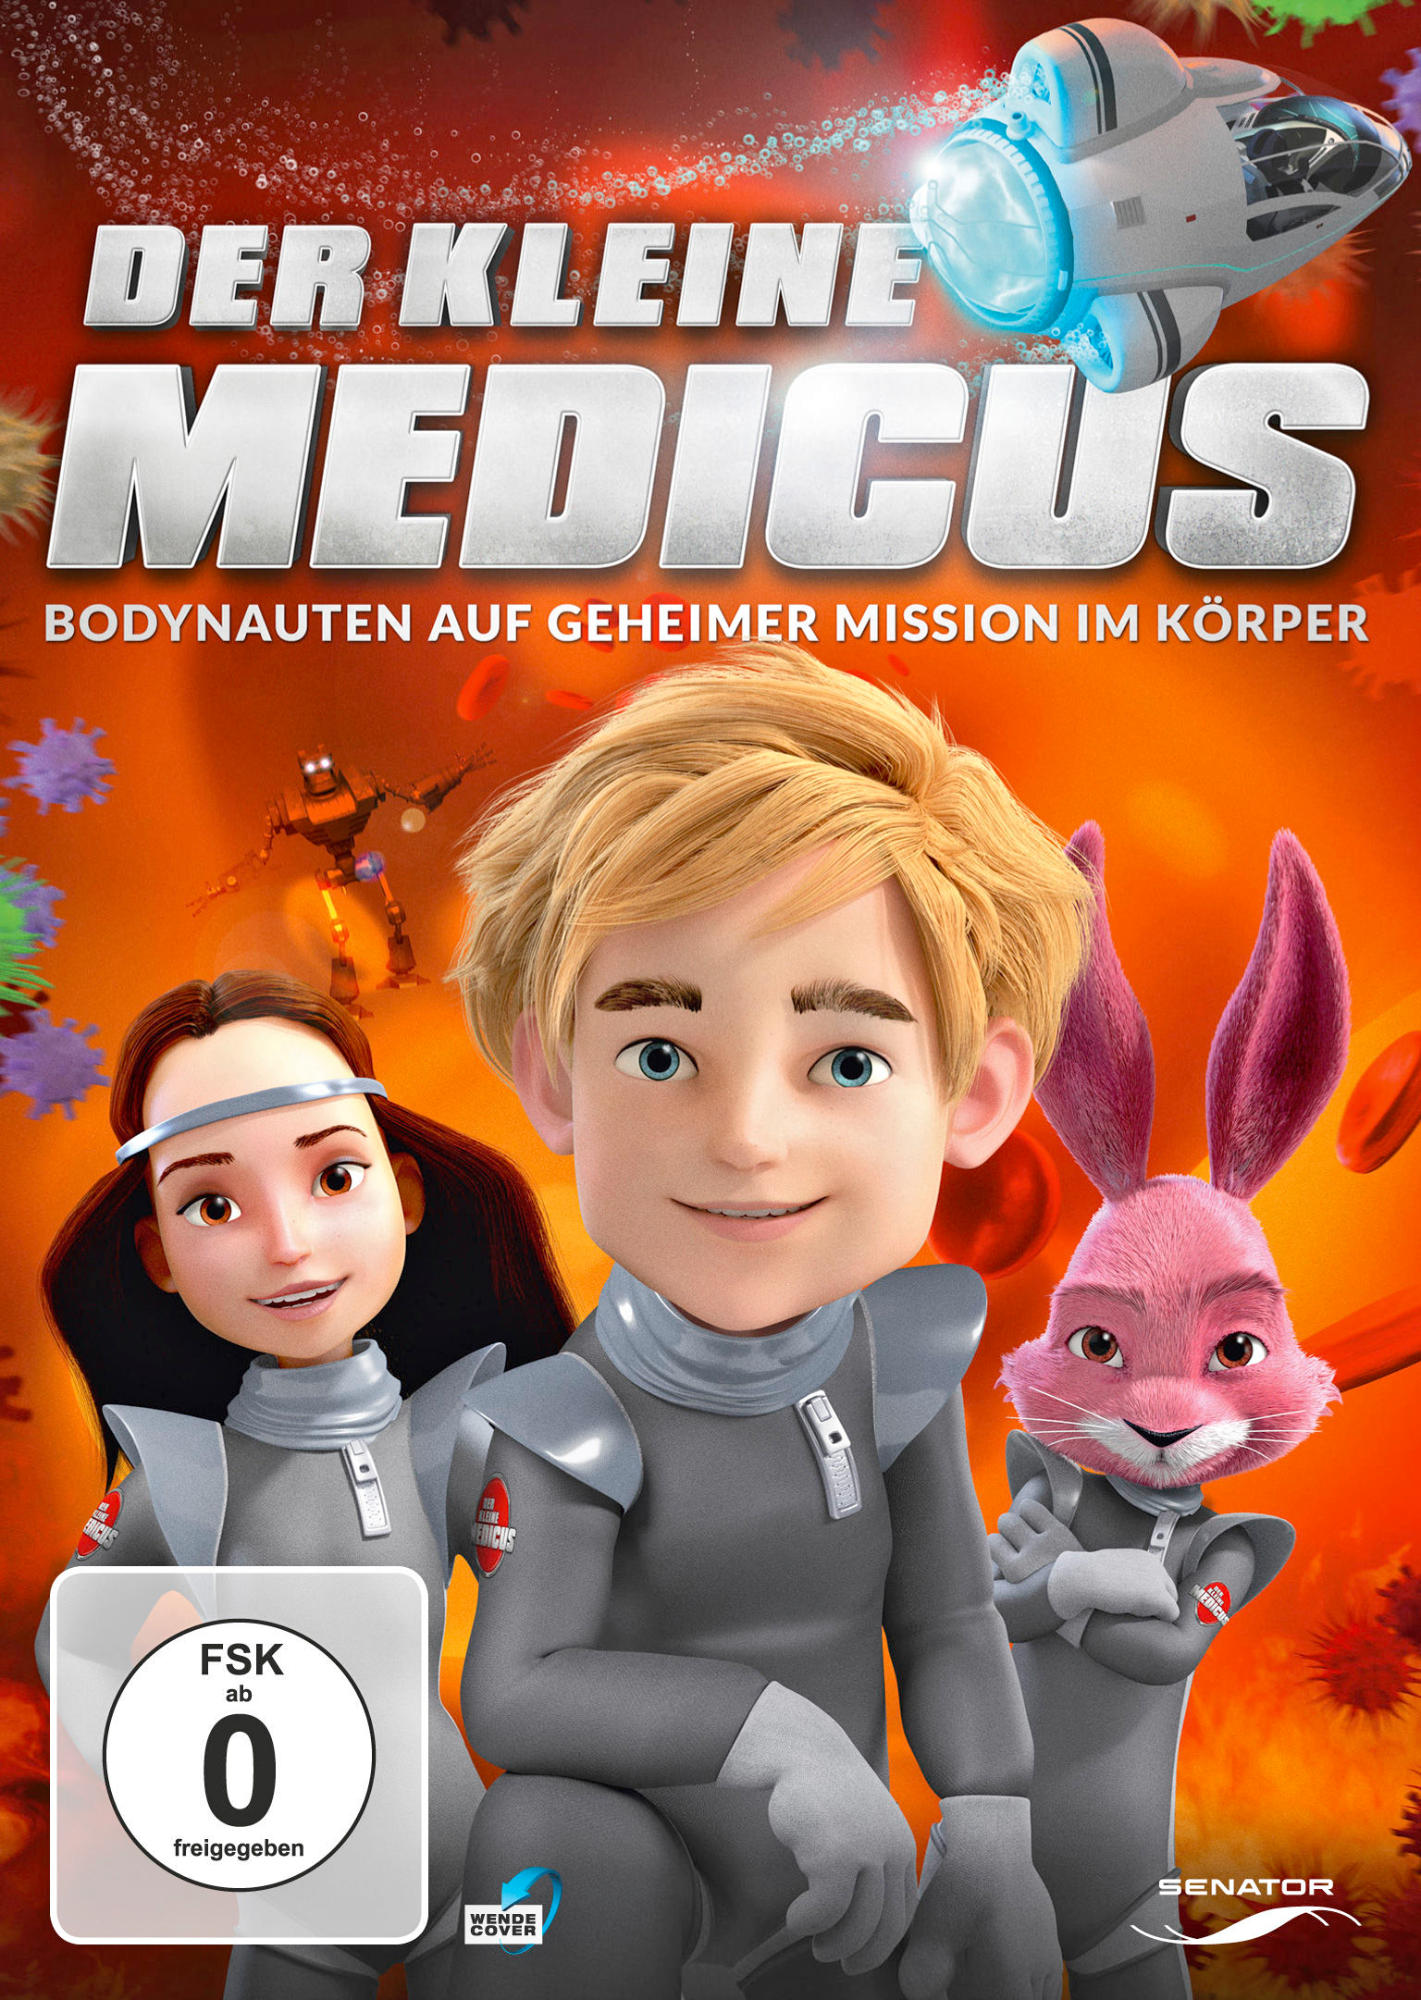 - Geheimnisvolle im DVD Kleine Medicus Körper Der Mission